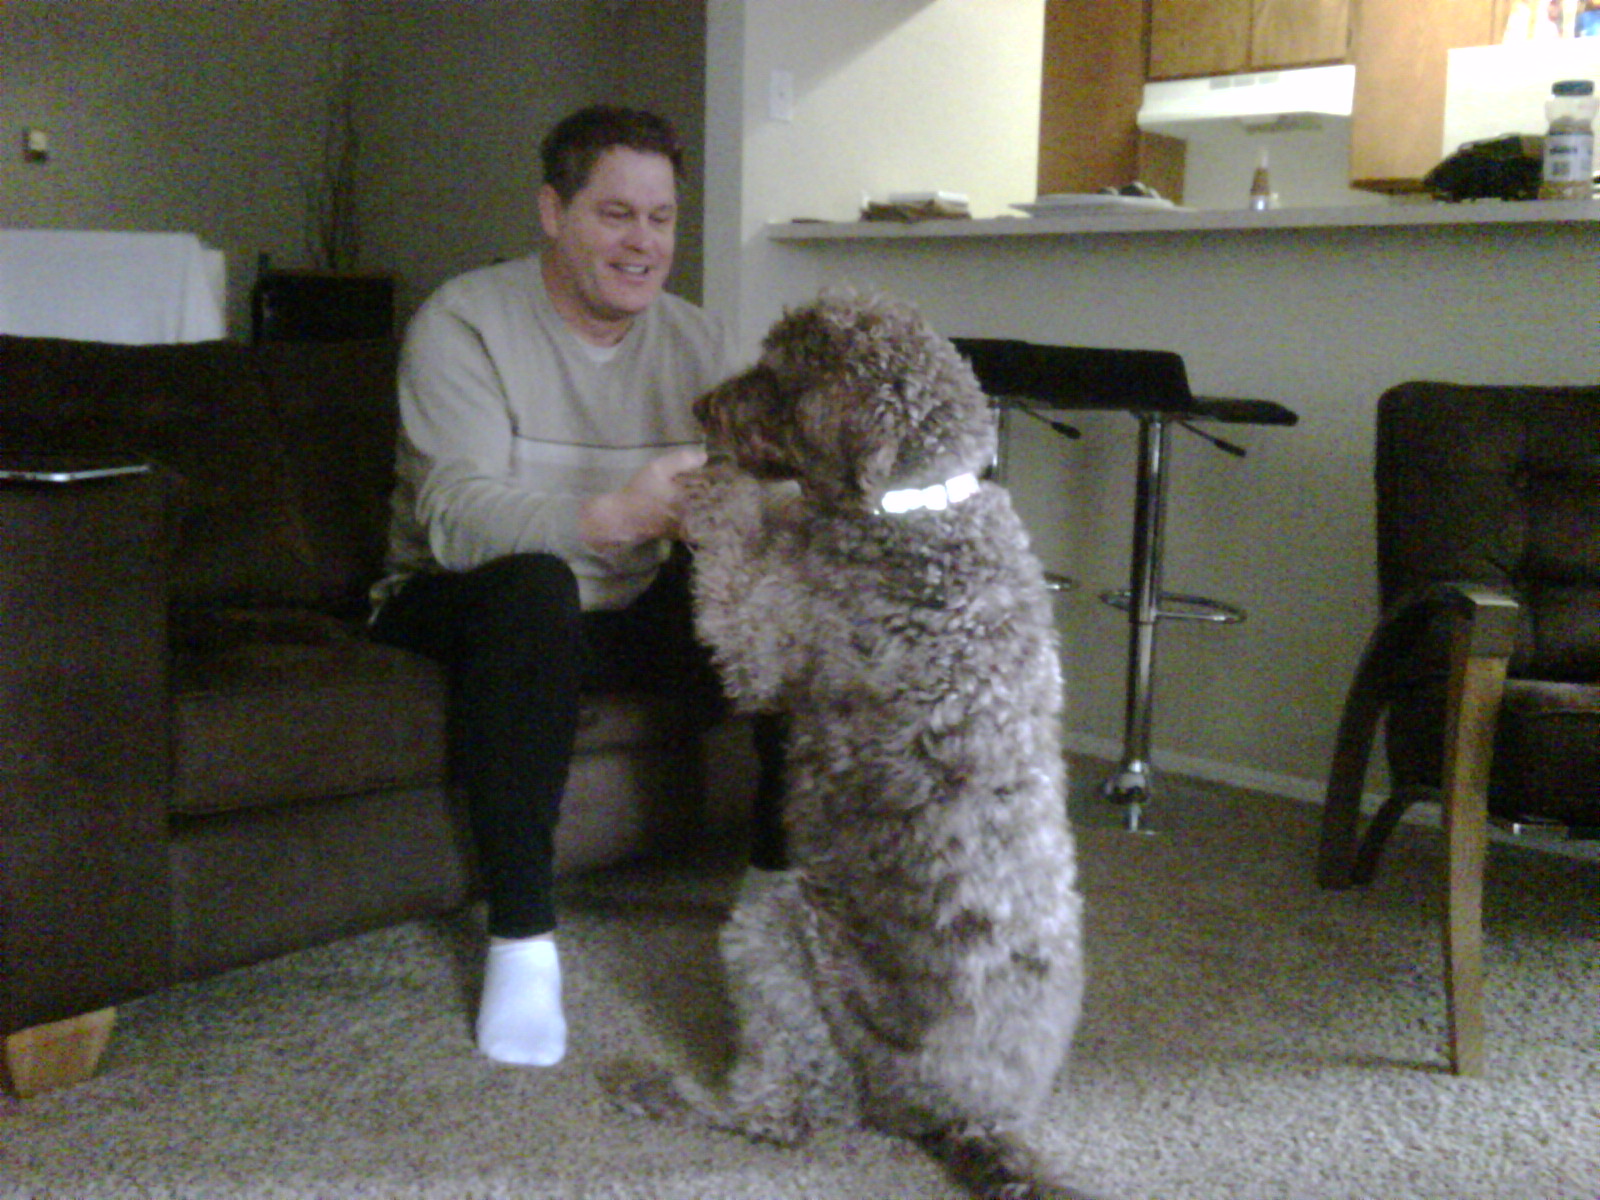 Chris Tucker and his dog Mocha